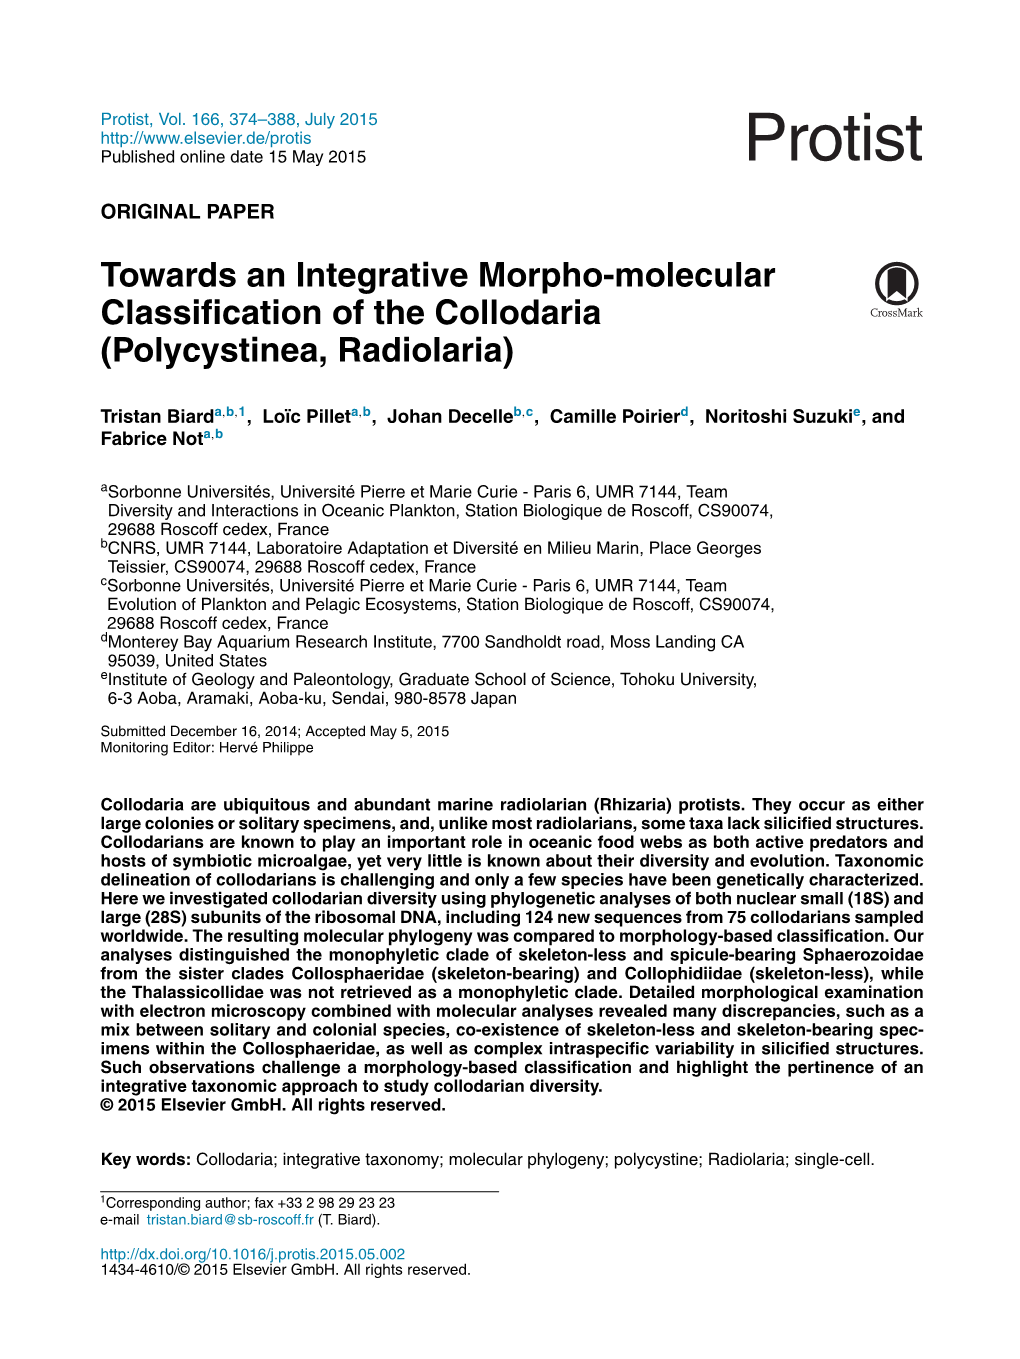 Towards an Integrative Morpho-Molecular Classification of the Collodaria (Polycystinea, Radiolaria)